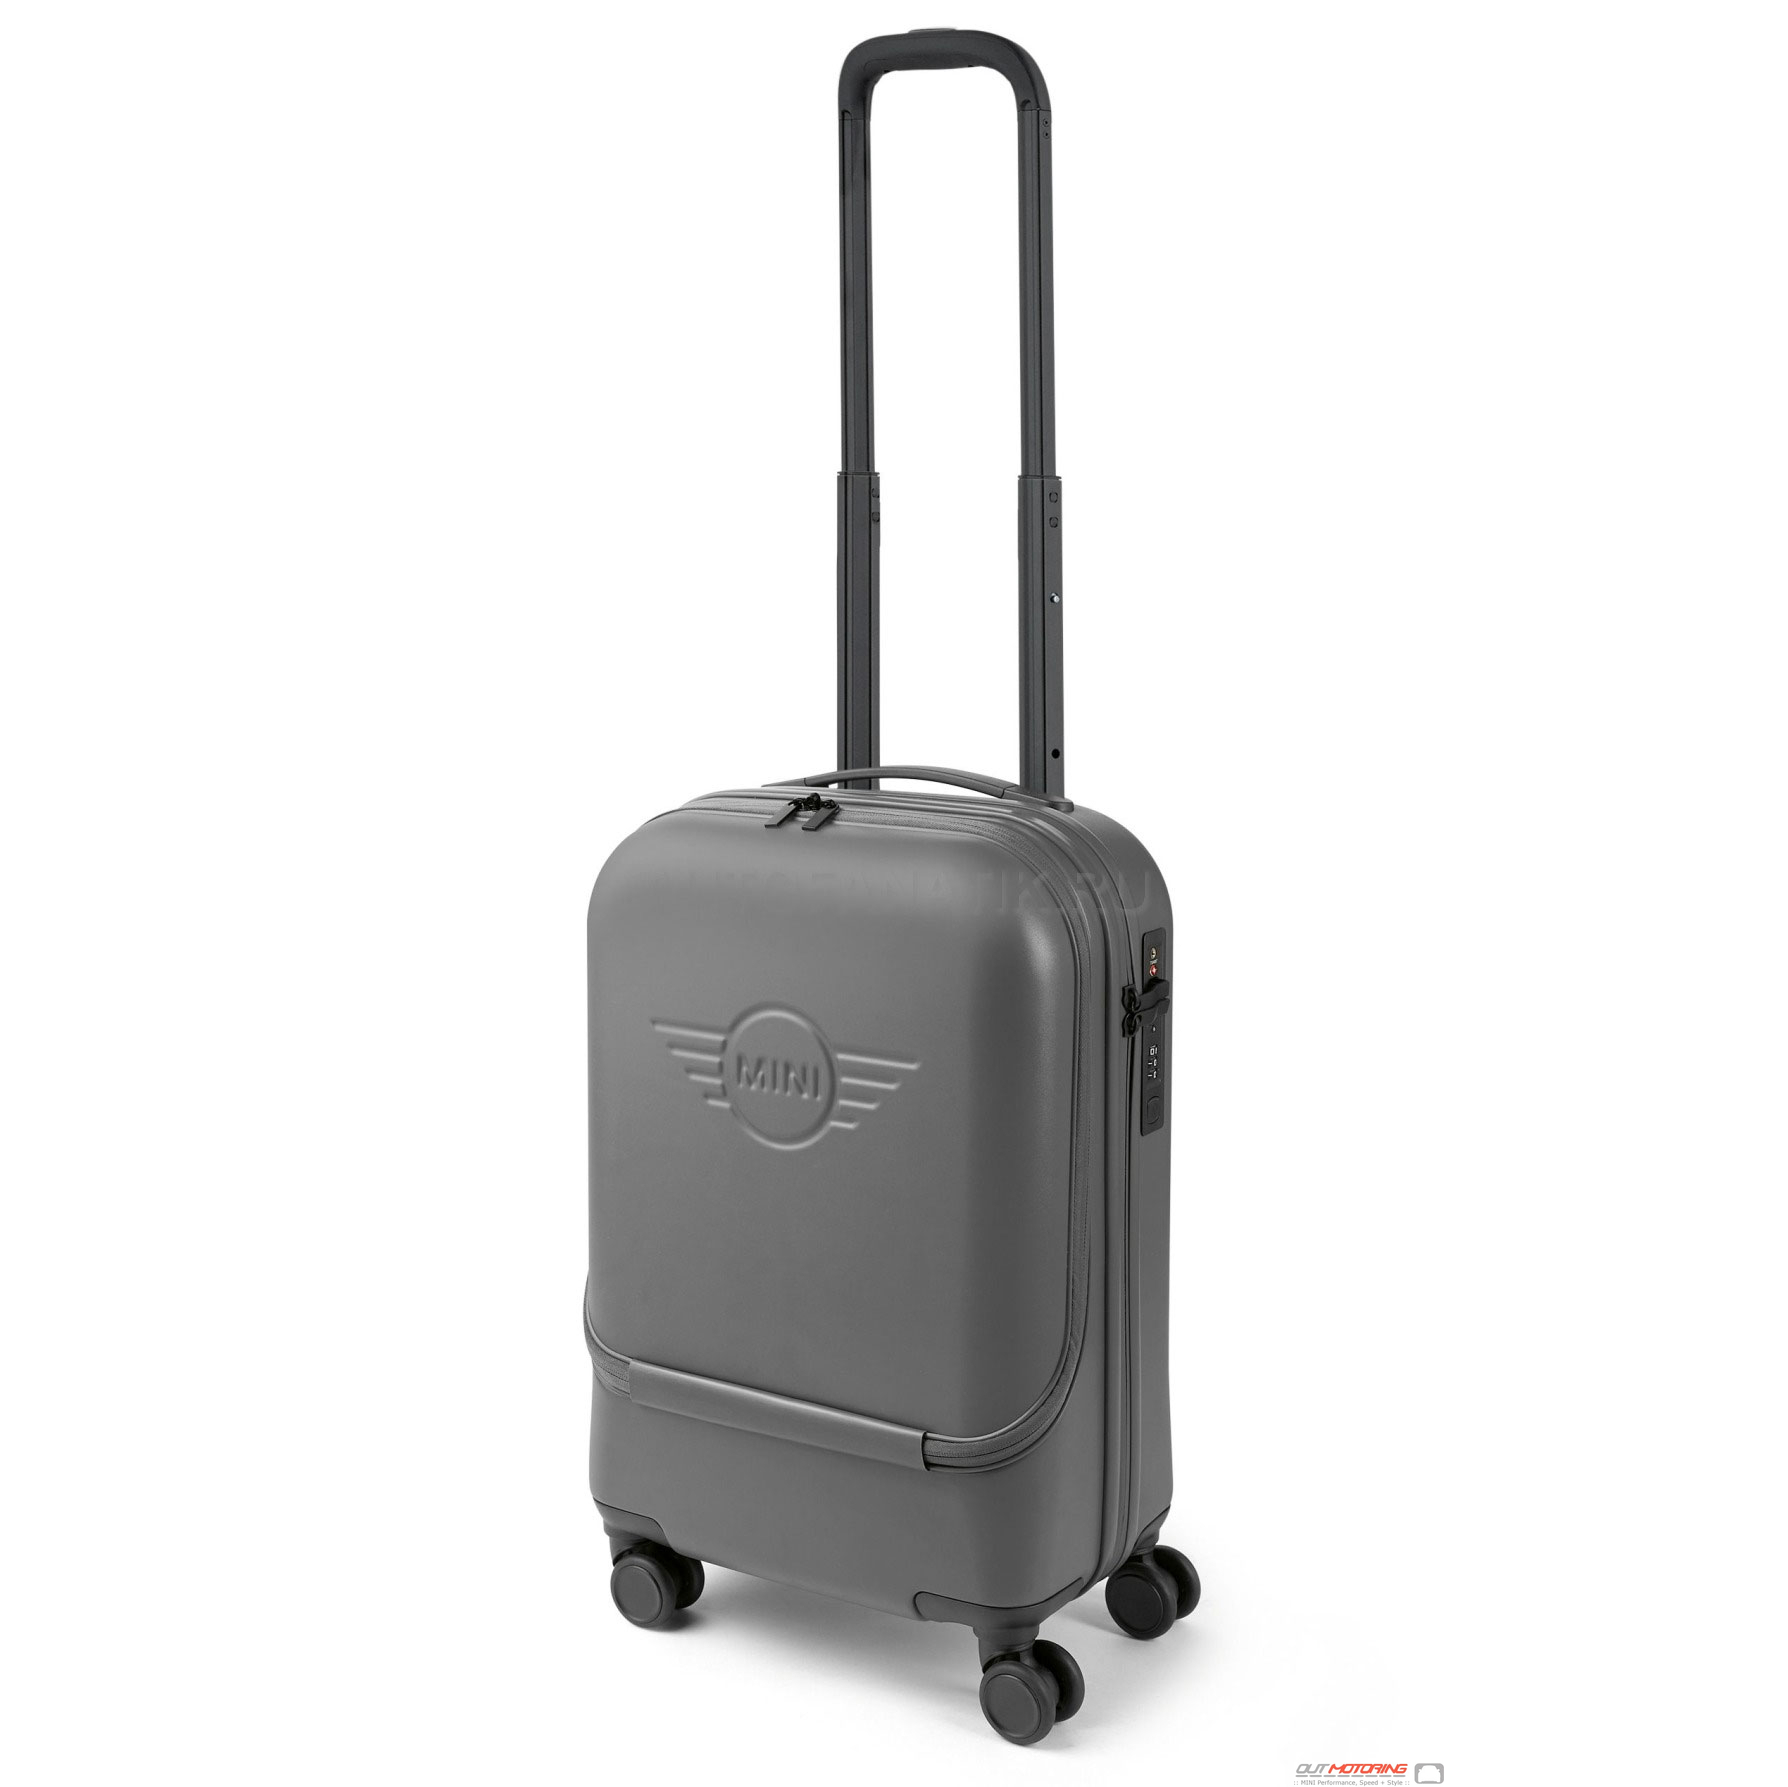 80222460876 MINI Cabin Trolley Suitcase Grey Travel Luggage MINI Cooper Accessories + MINI